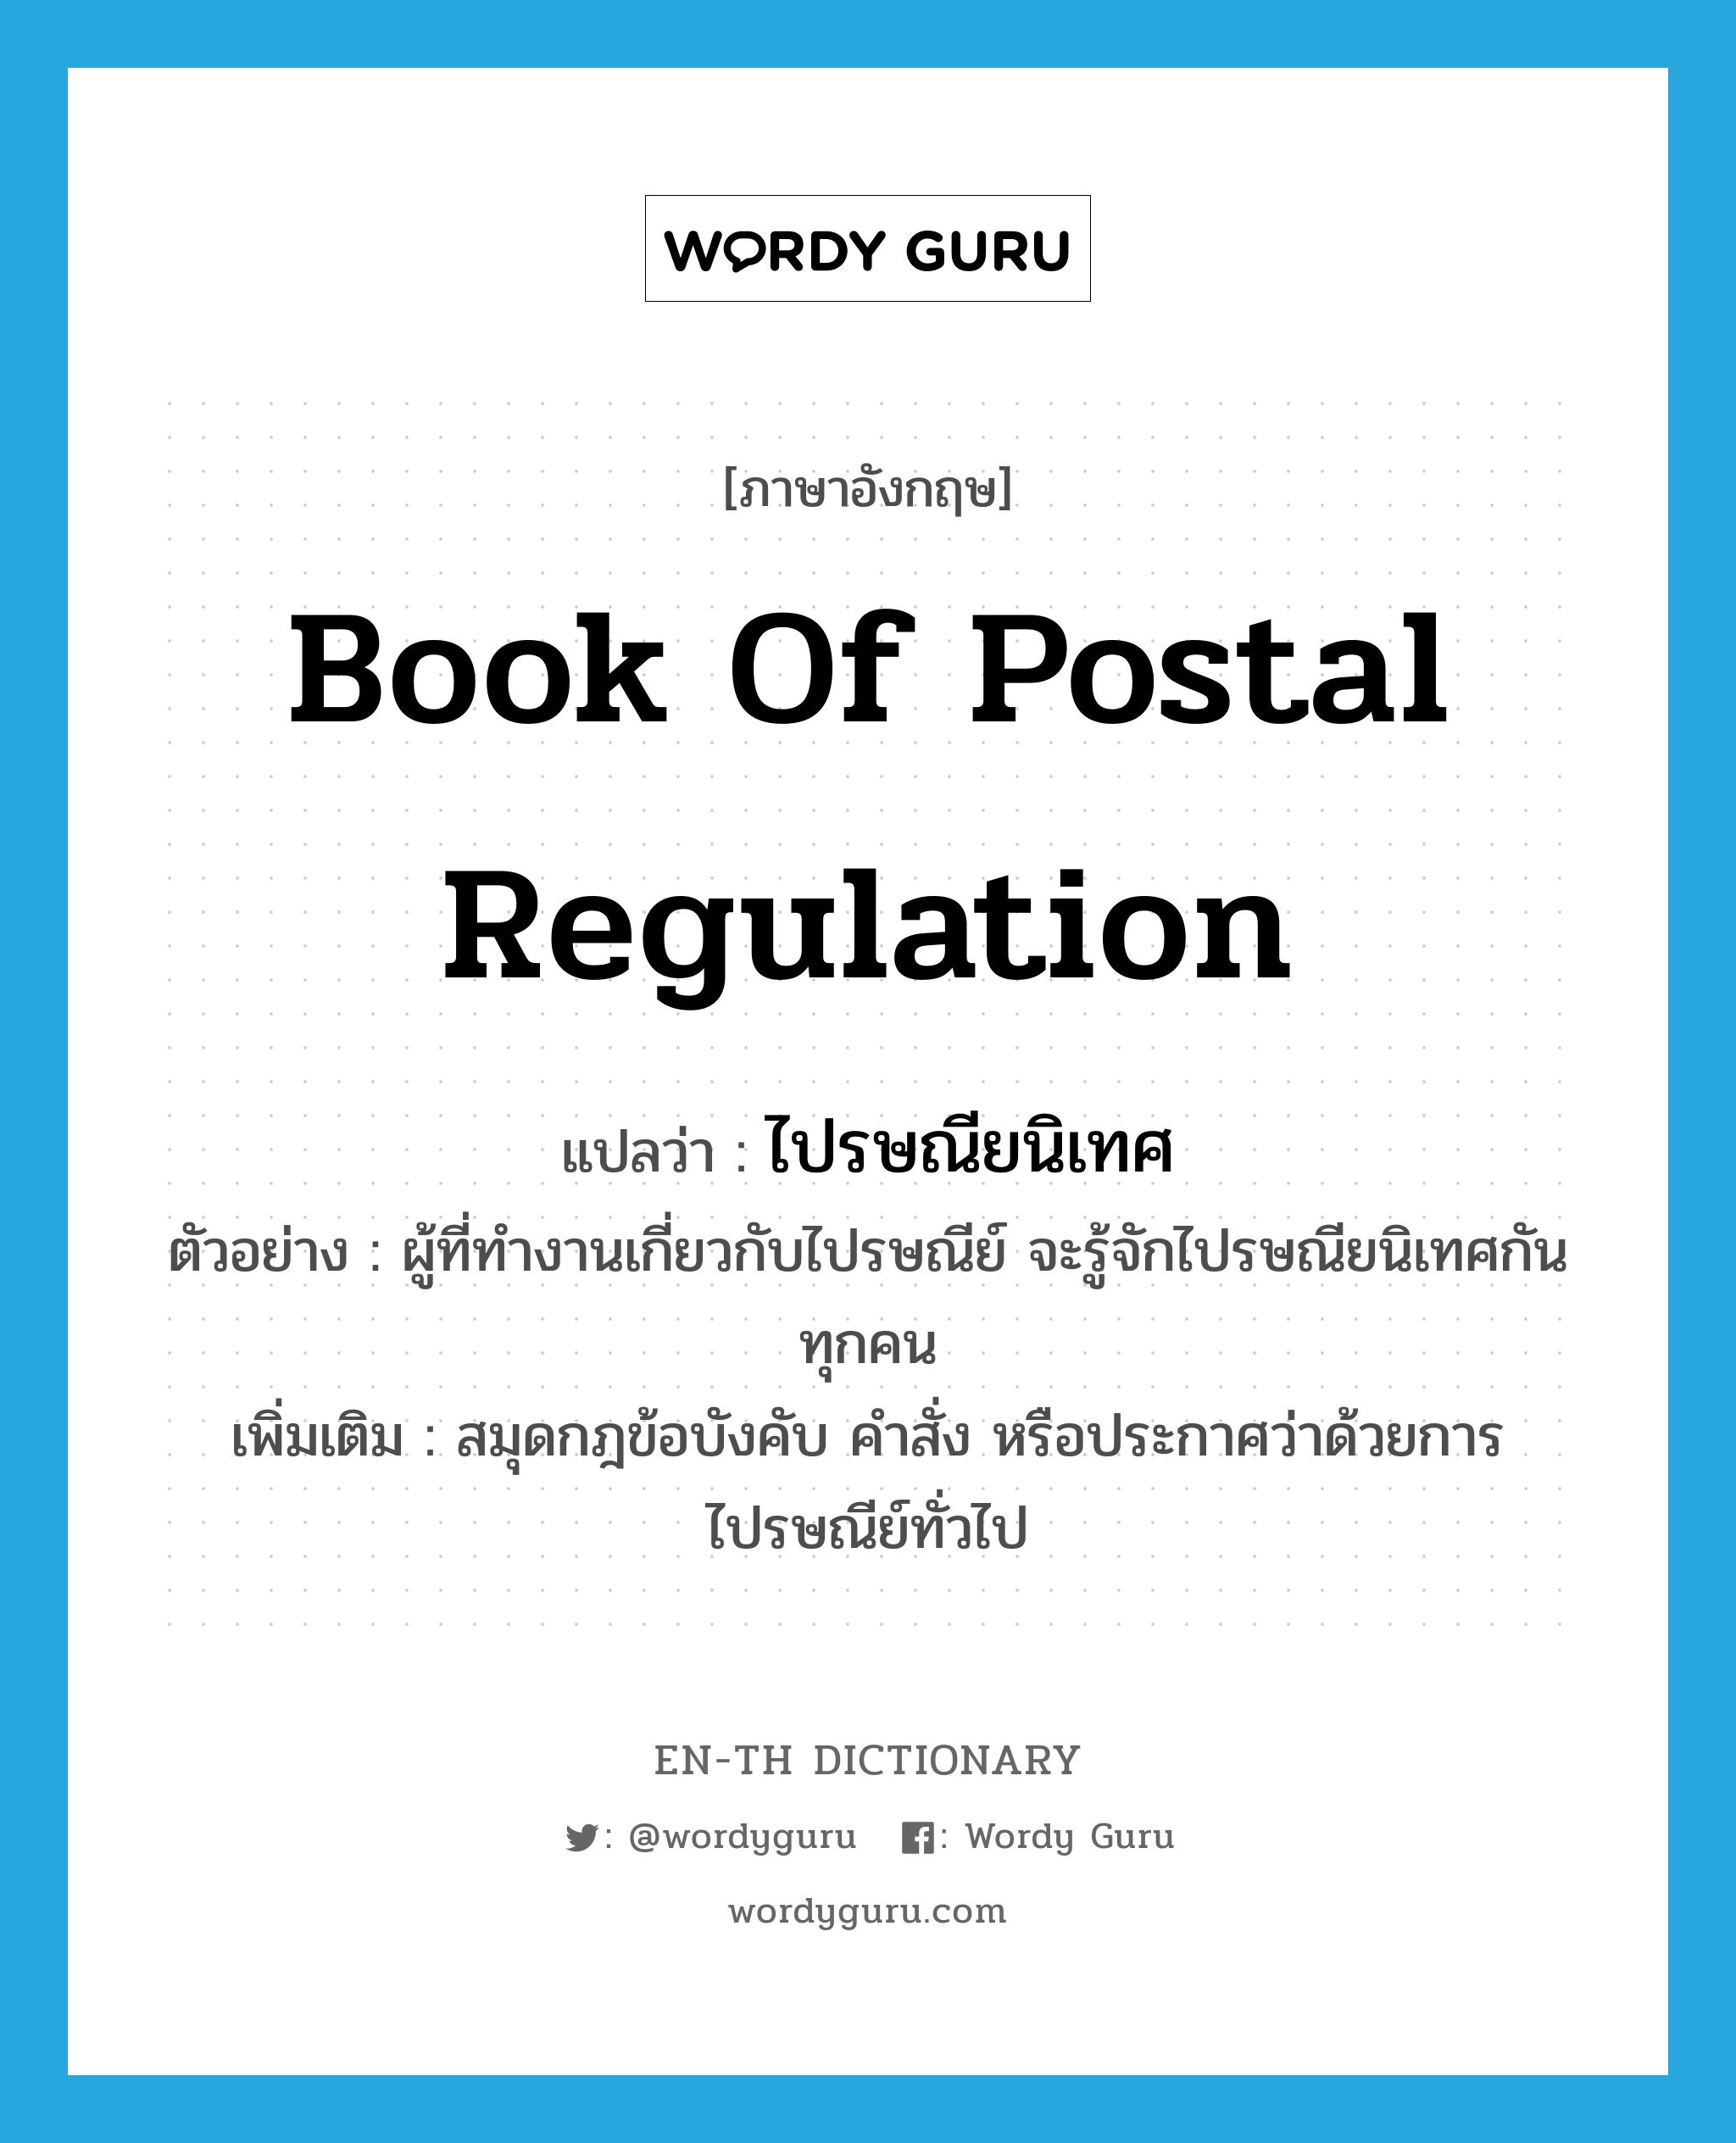 ไปรษณียนิเทศ ภาษาอังกฤษ?, คำศัพท์ภาษาอังกฤษ ไปรษณียนิเทศ แปลว่า book of postal regulation ประเภท N ตัวอย่าง ผู้ที่ทำงานเกี่ยวกับไปรษณีย์ จะรู้จักไปรษณียนิเทศกันทุกคน เพิ่มเติม สมุดกฎข้อบังคับ คำสั่ง หรือประกาศว่าด้วยการไปรษณีย์ทั่วไป หมวด N